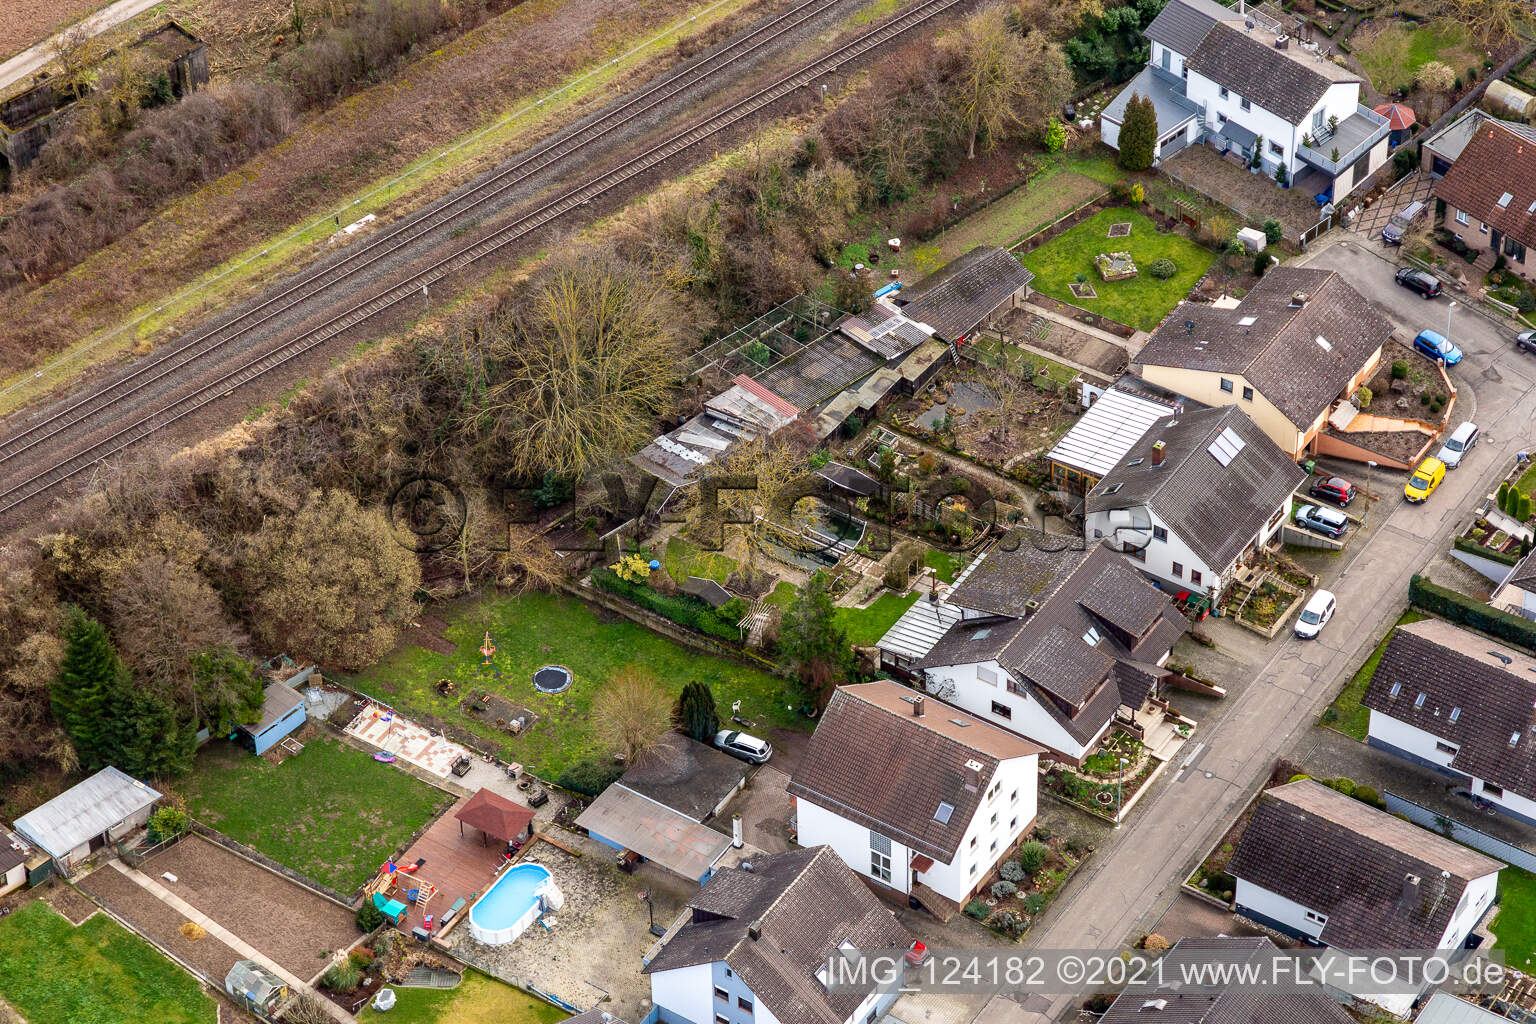 Im Rosengarten in Winden im Bundesland Rheinland-Pfalz, Deutschland aus der Drohnenperspektive